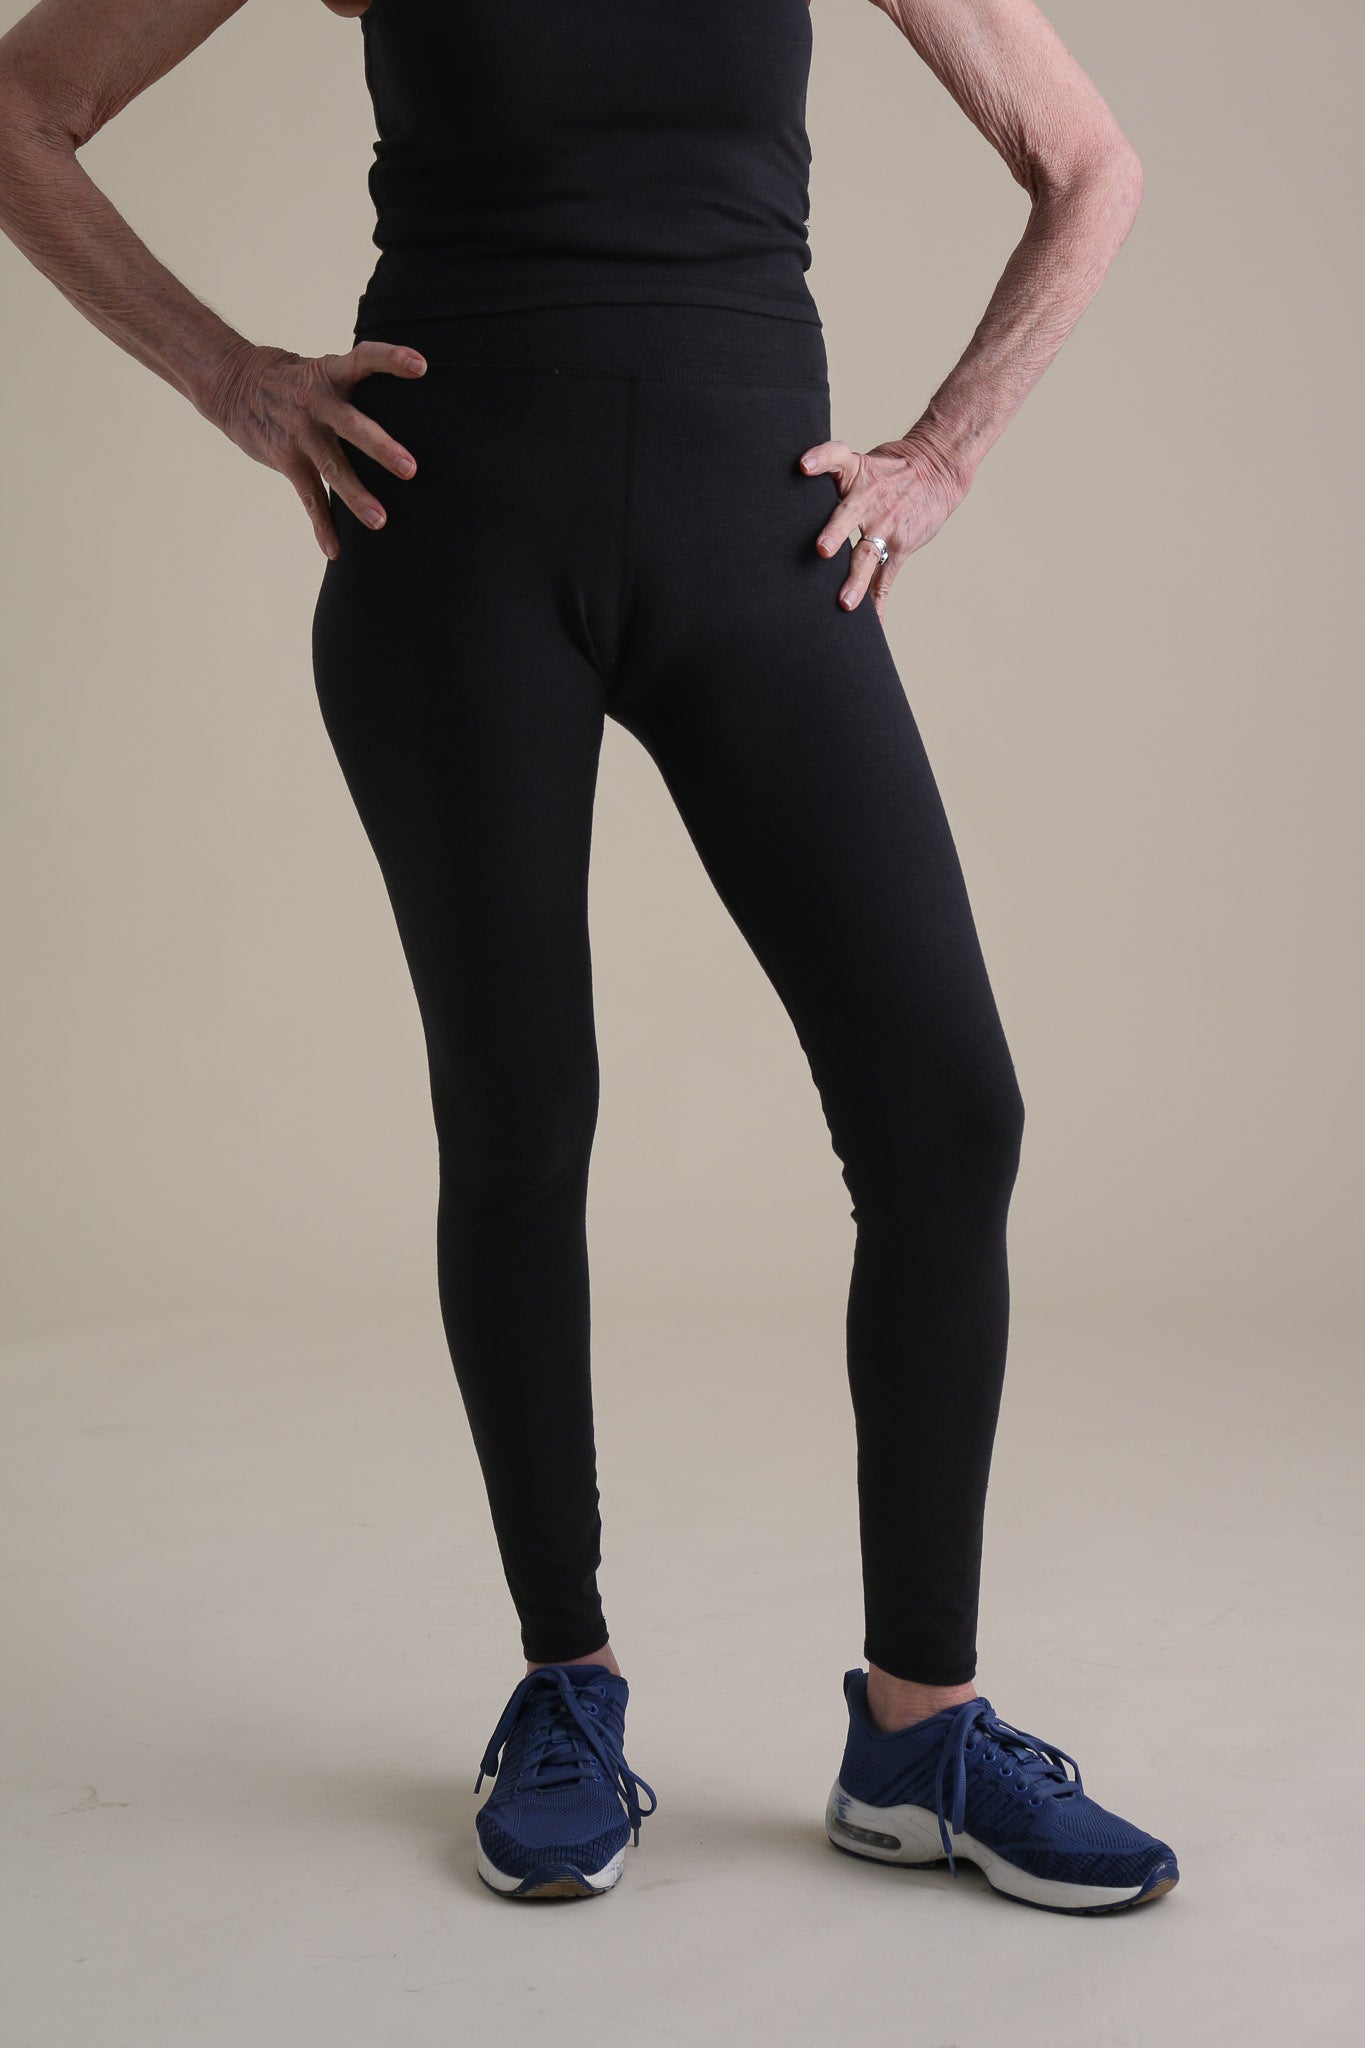 Yoga Leggings in Black – Conscious Clothing